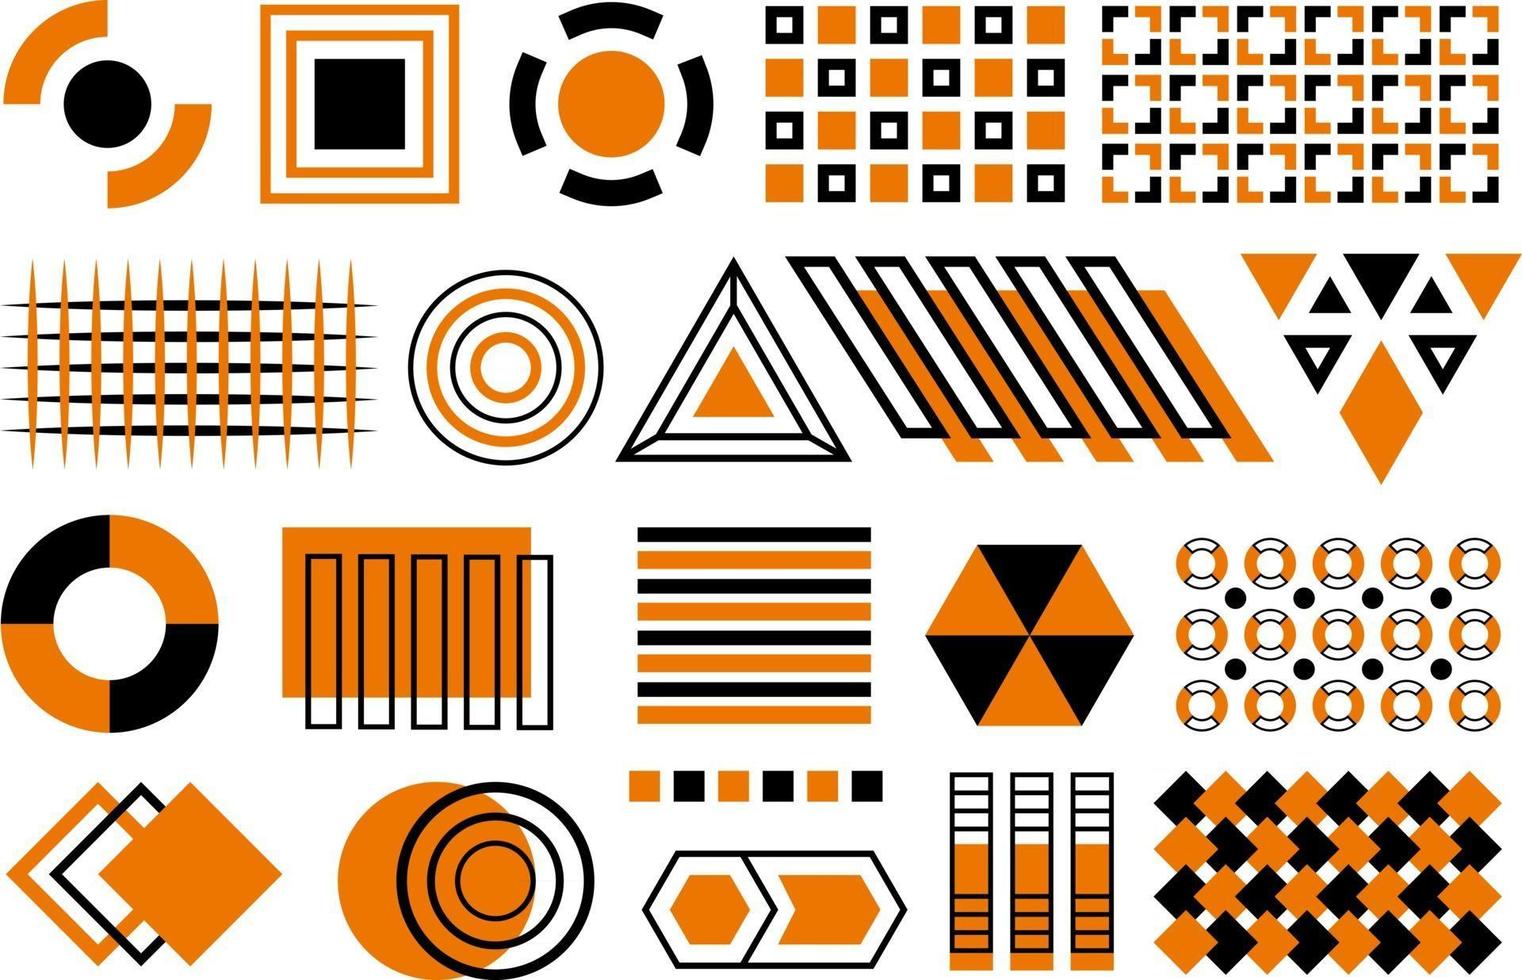 vector negro y naranja memphis cpllection. conjunto de formas planas geométricas negras y naranjas, elementos de diseño de memphis